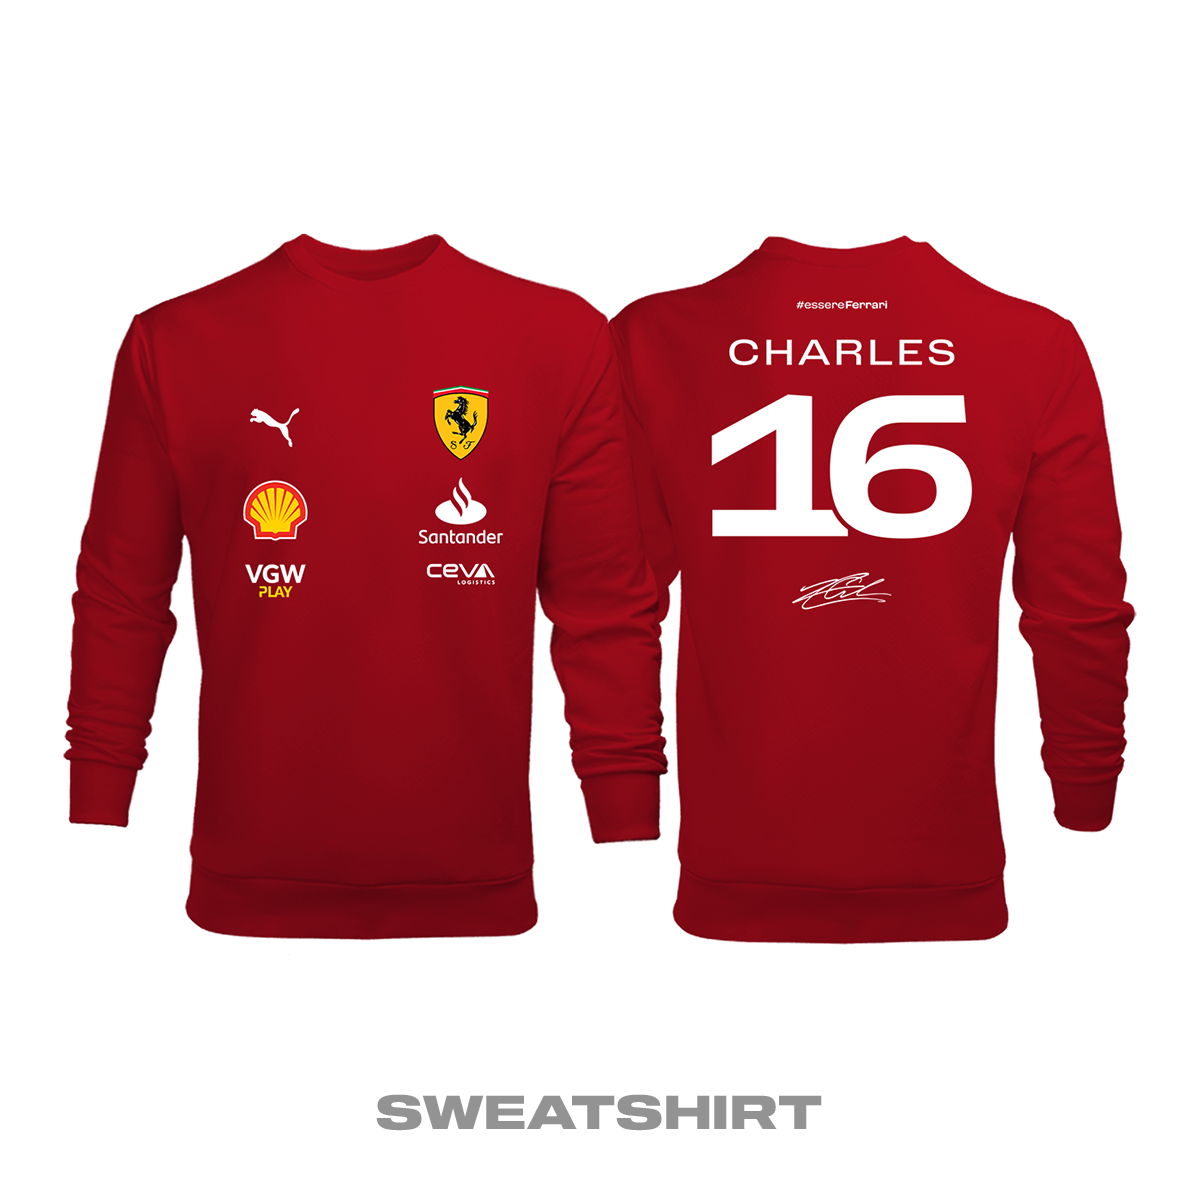 Scuderia Ferrari: Red Crew Edition 2023 Sweatshirt